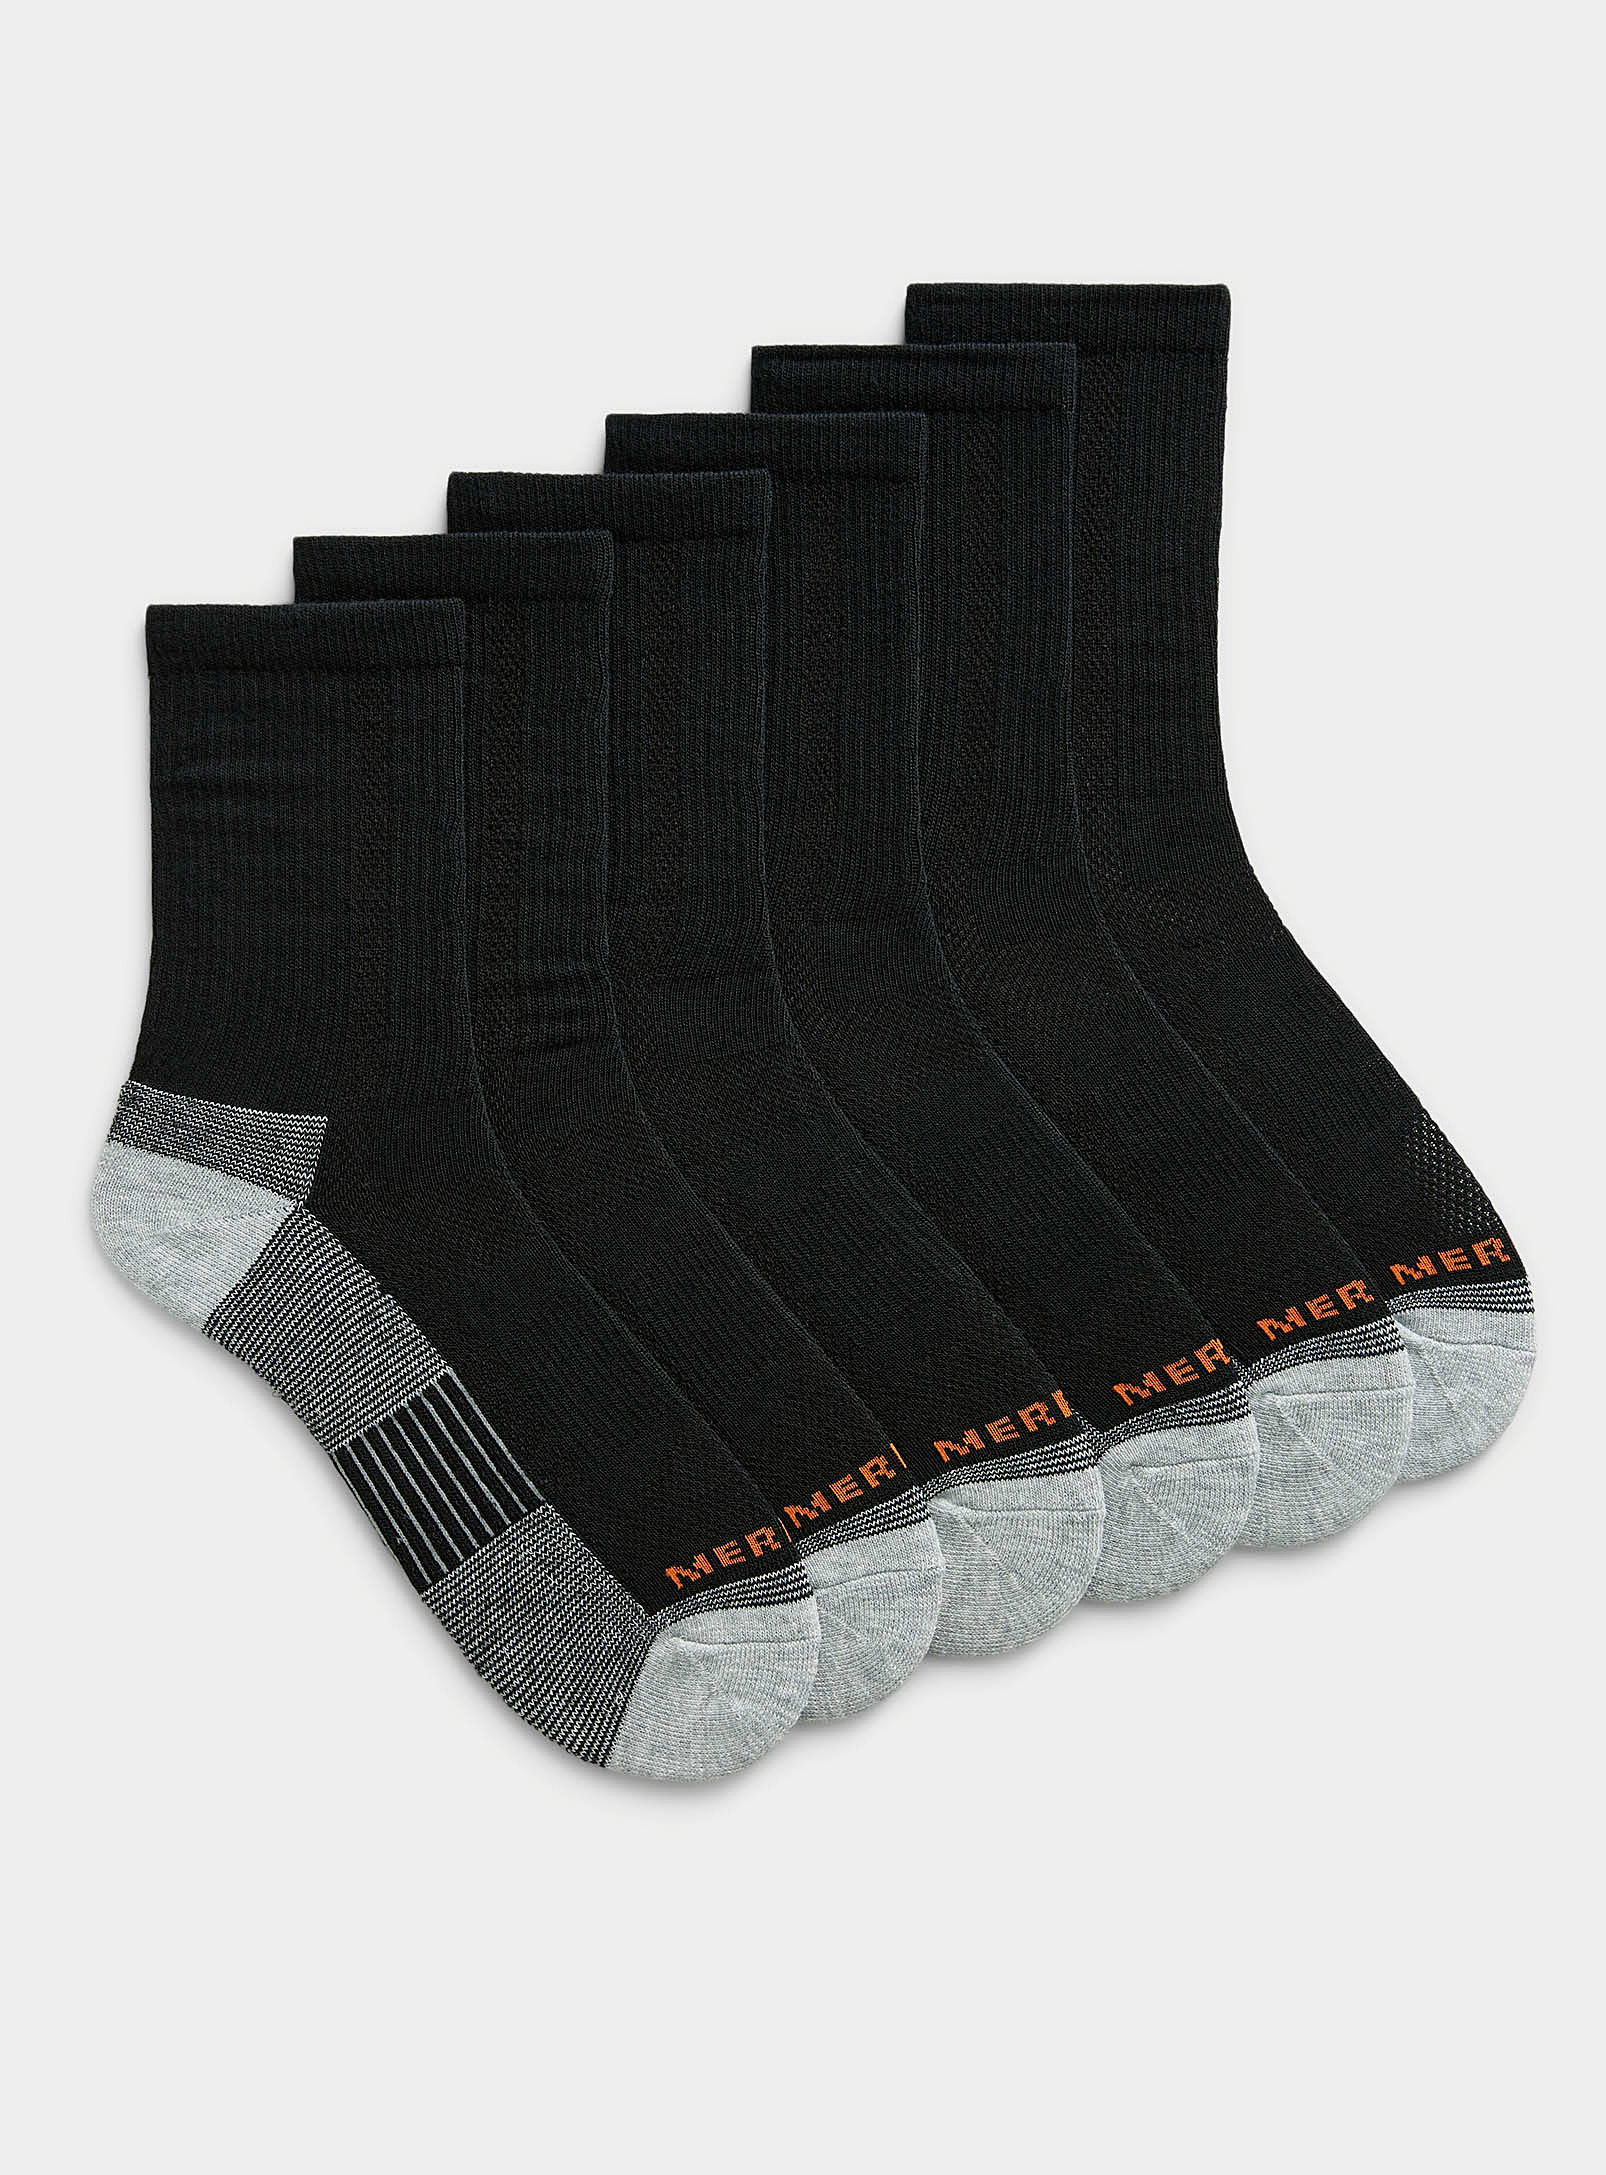 Merrell - Men's Neutral reinforced socks 6-pack